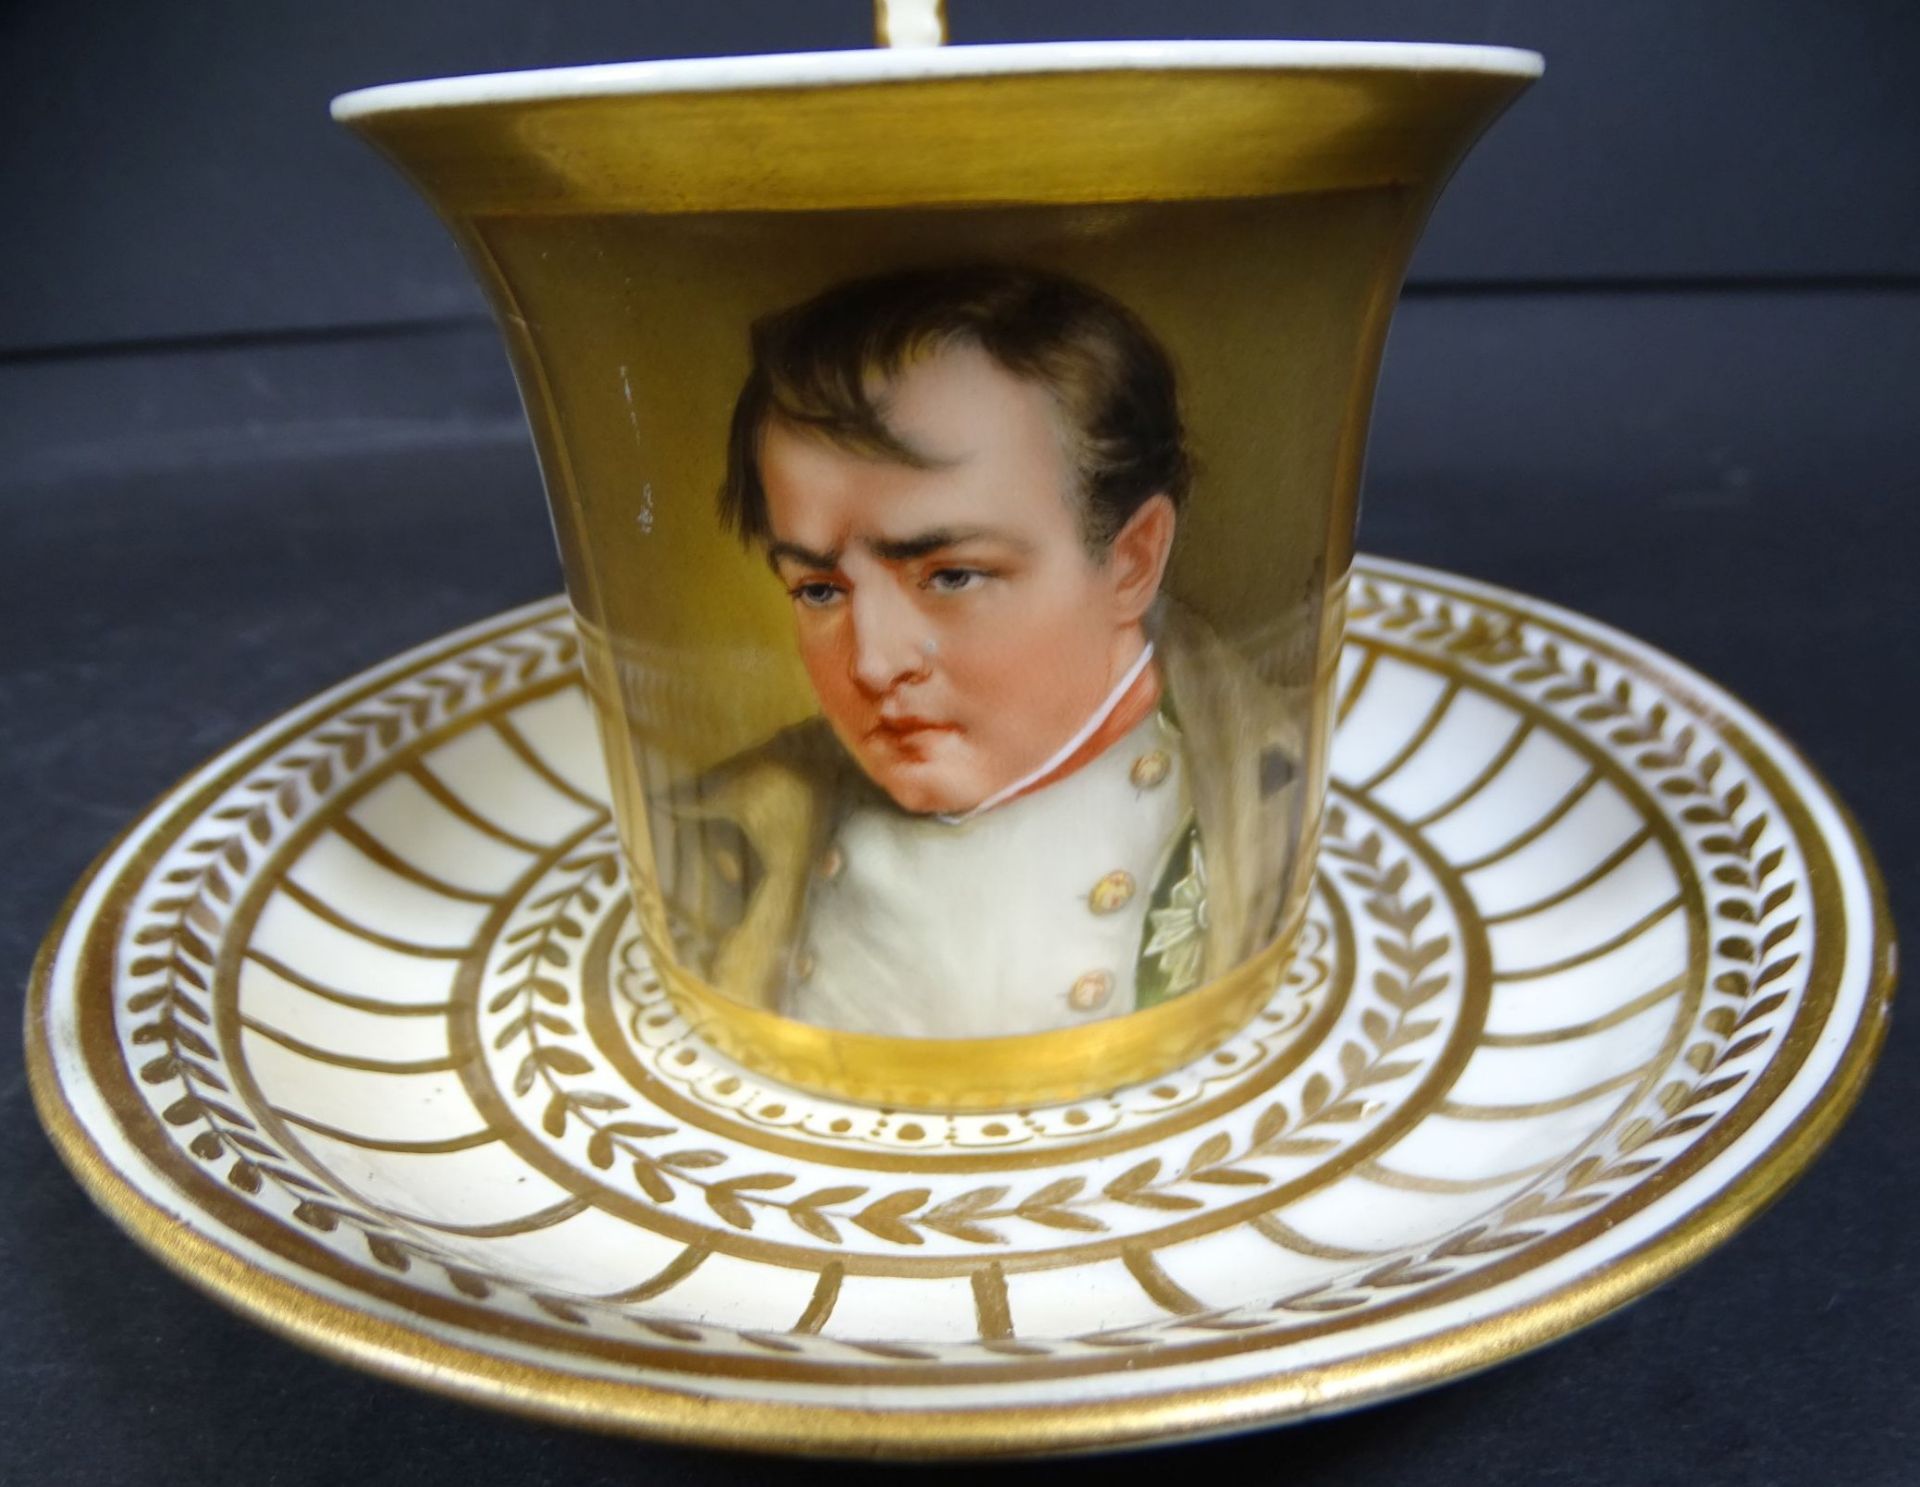 Tasse mit Untertasse "Napoleon" Frankreich um 1810, sign. Brelte, H-10 cm, U.T. D-8 cm, Goldstaffage